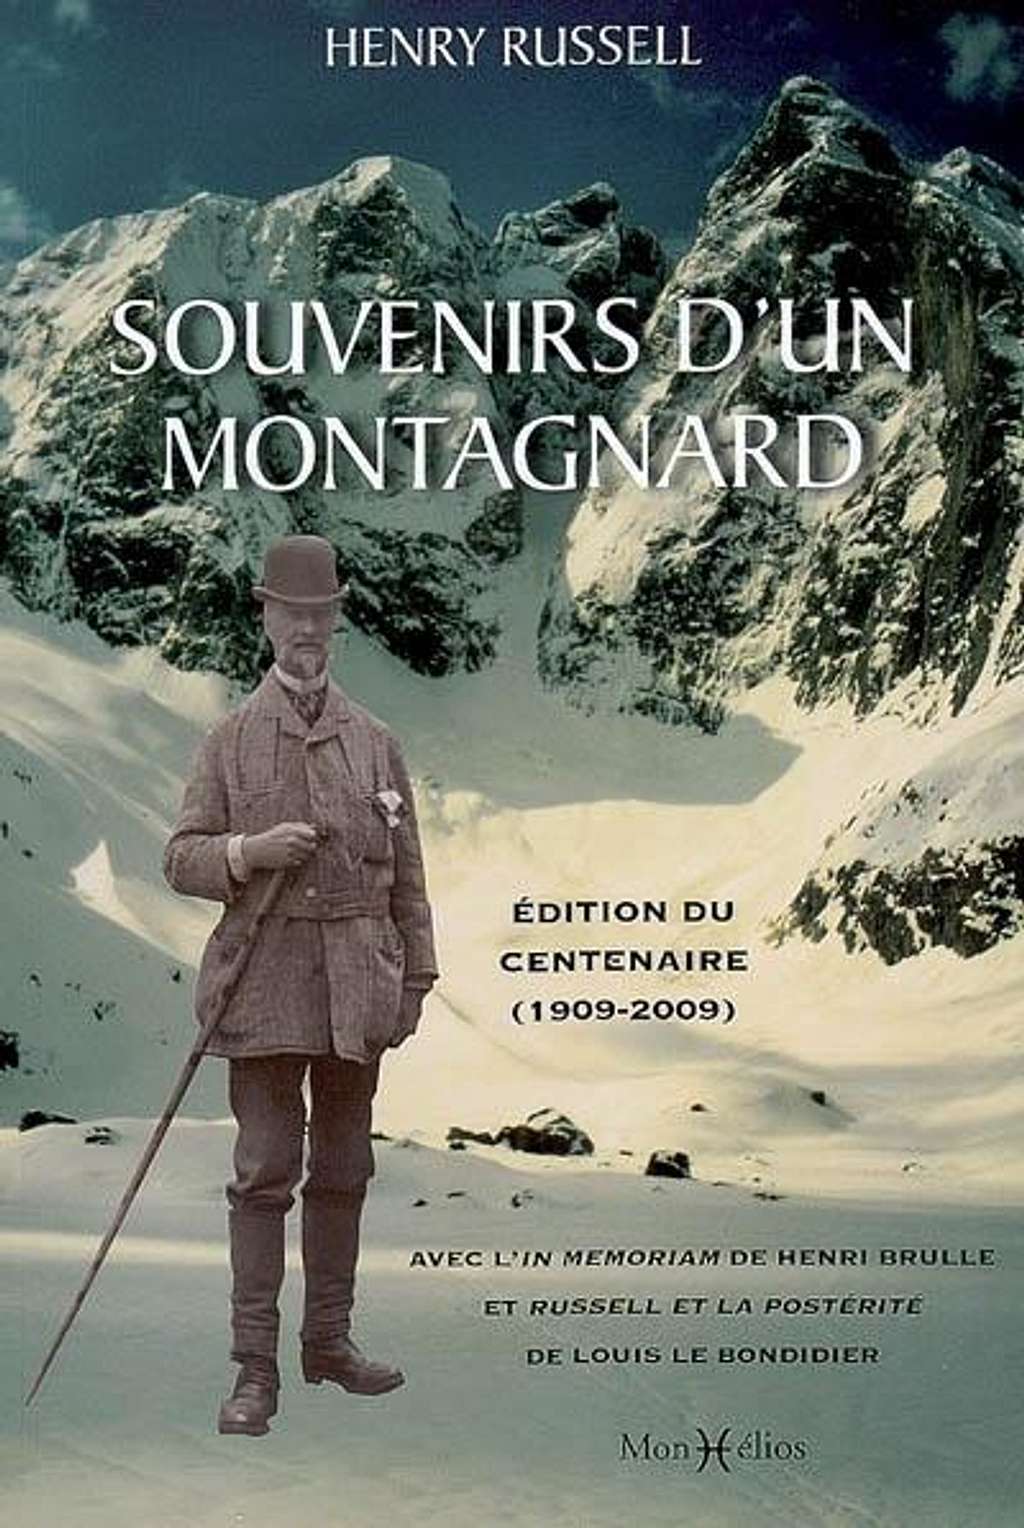 Souvenirs d'un Montagnard, Russell's book